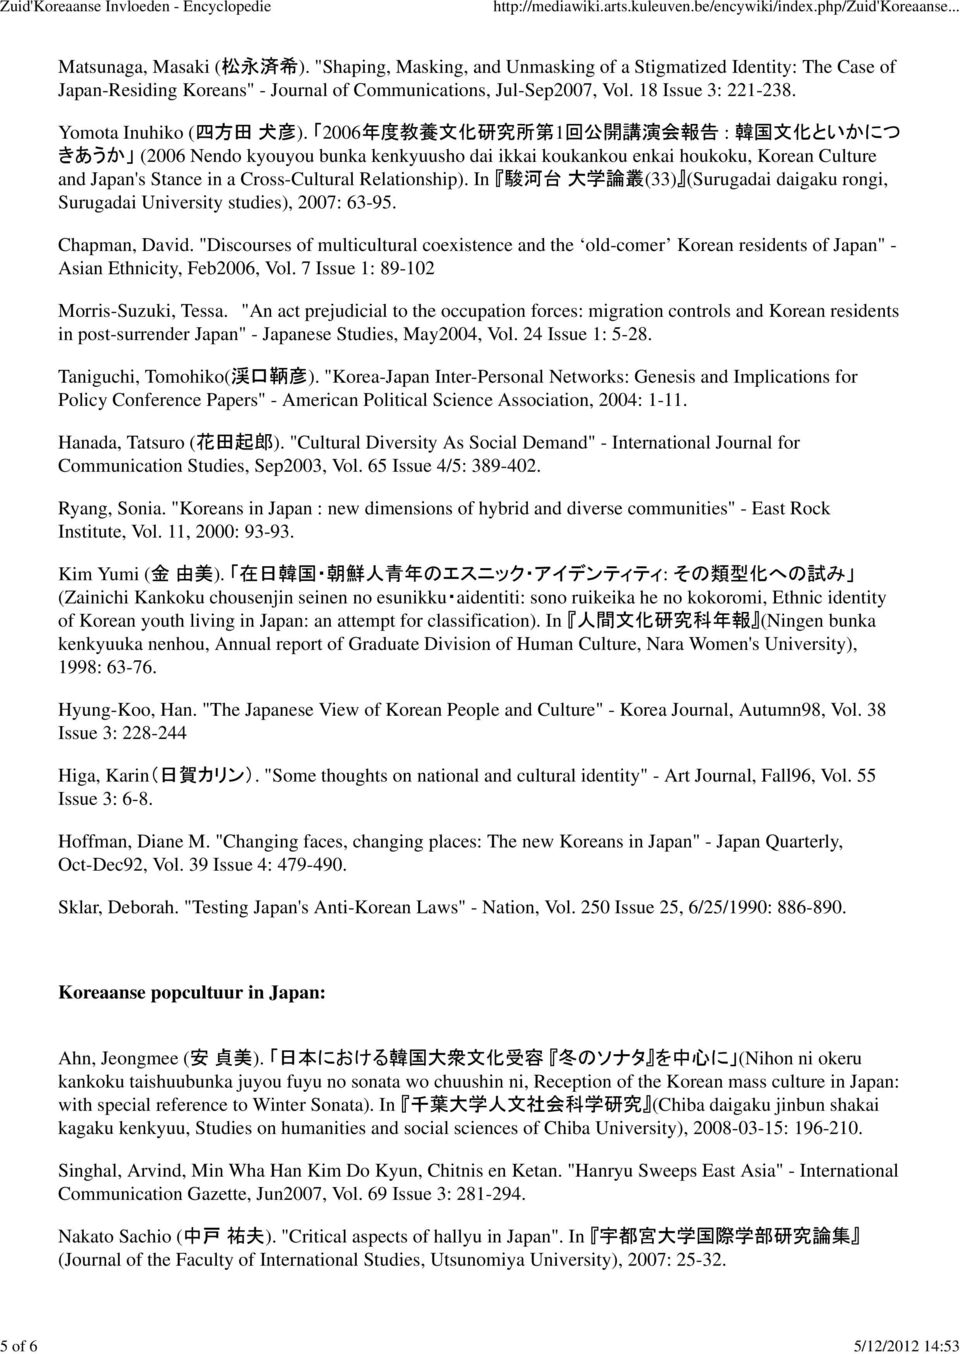 2006 年 度 教 養 文 化 研 究 所 第 1 回 公 開 講 演 会 報 告 : 韓 国 文 化 といかにつ きあうか (2006 Nendo kyouyou bunka kenkyuusho dai ikkai koukankou enkai houkoku, Korean Culture and Japan's Stance in a Cross-Cultural